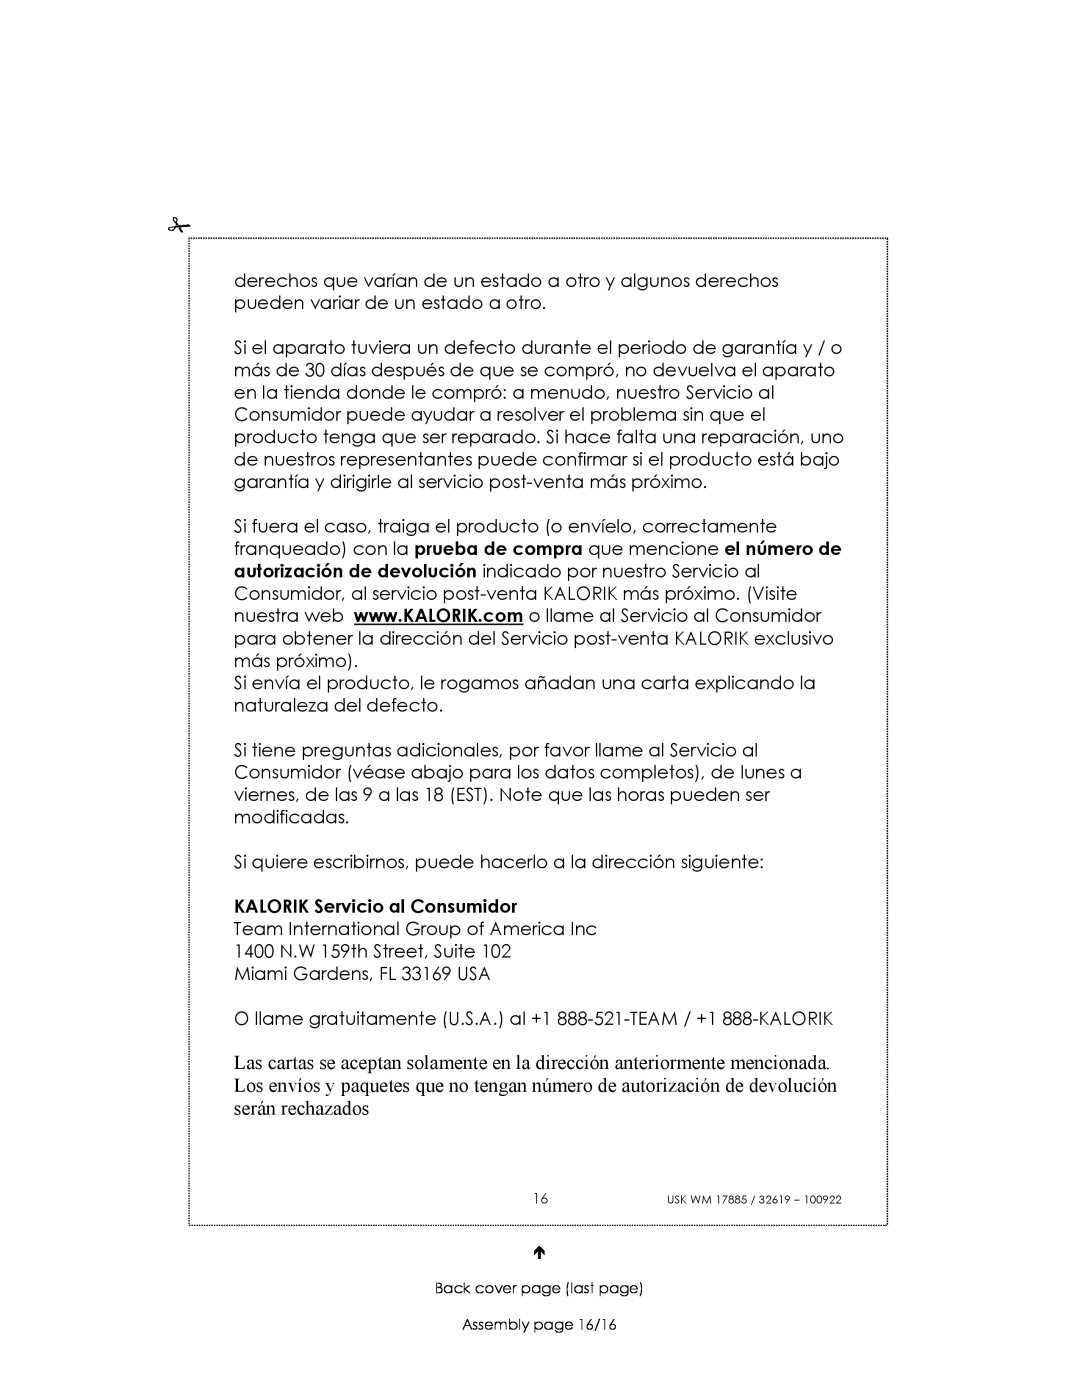 Kalorik usk wm 32619, usk wm 17885 manual KALORIK Servicio al Consumidor 